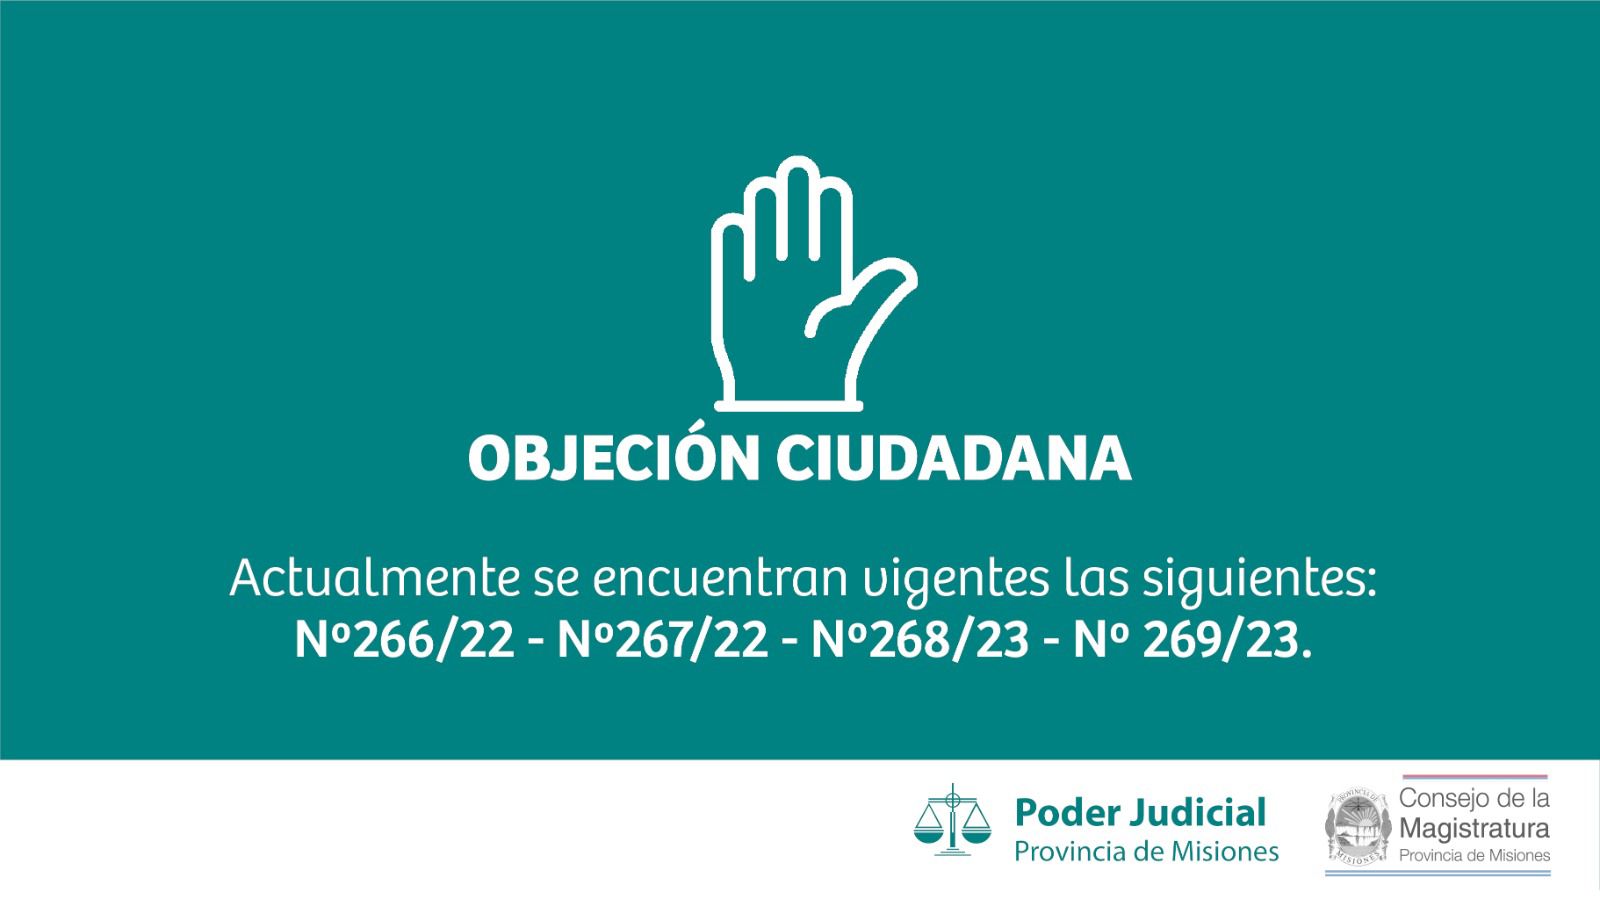 La participación ciudadana en el proceso de selección de autoridades judiciales mediante objeciones imagen-1